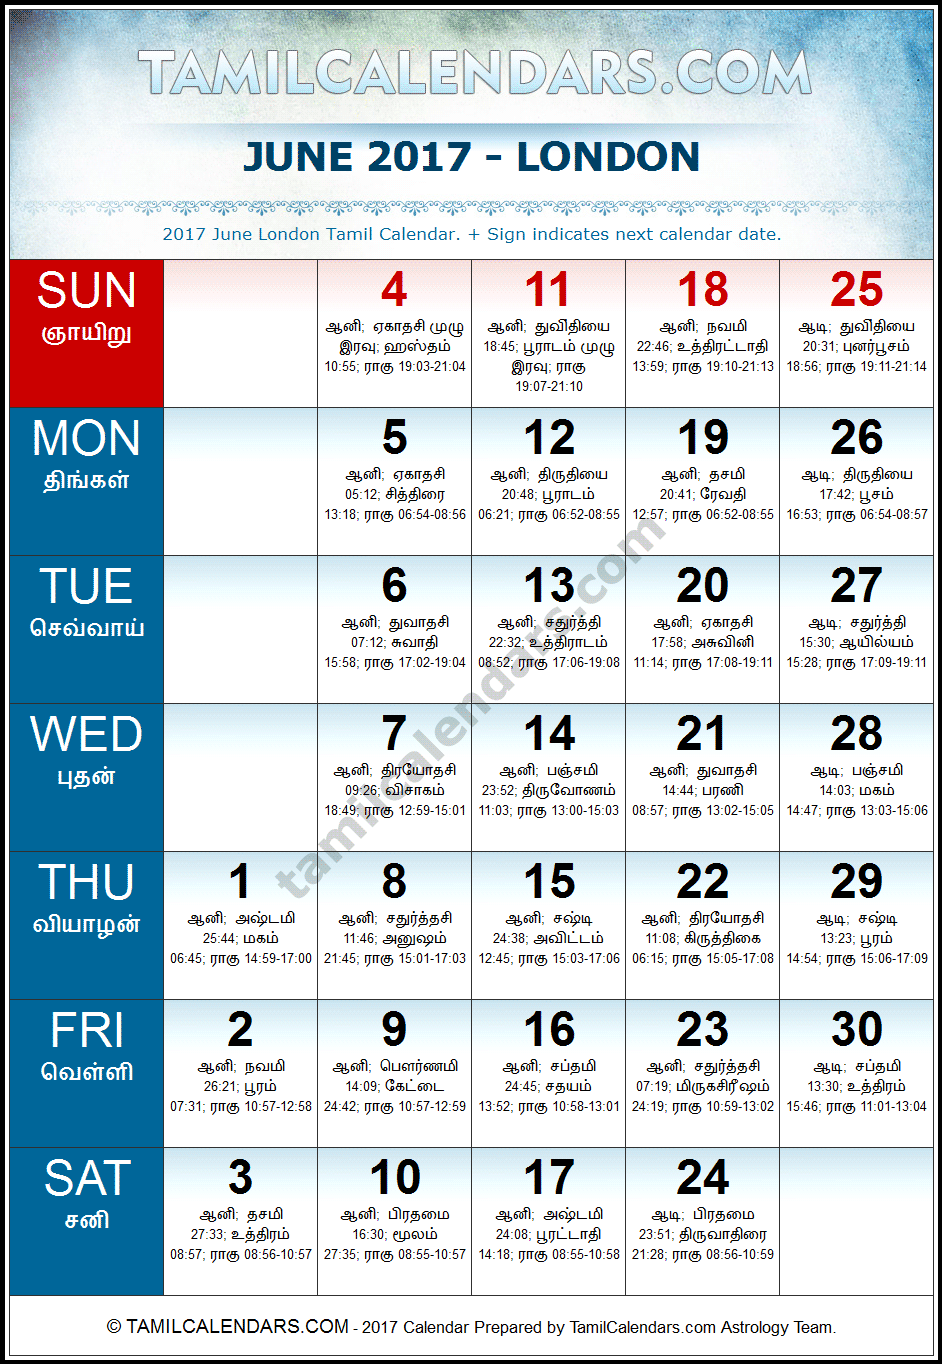 June 2017 Tamil Calendar for London, UK